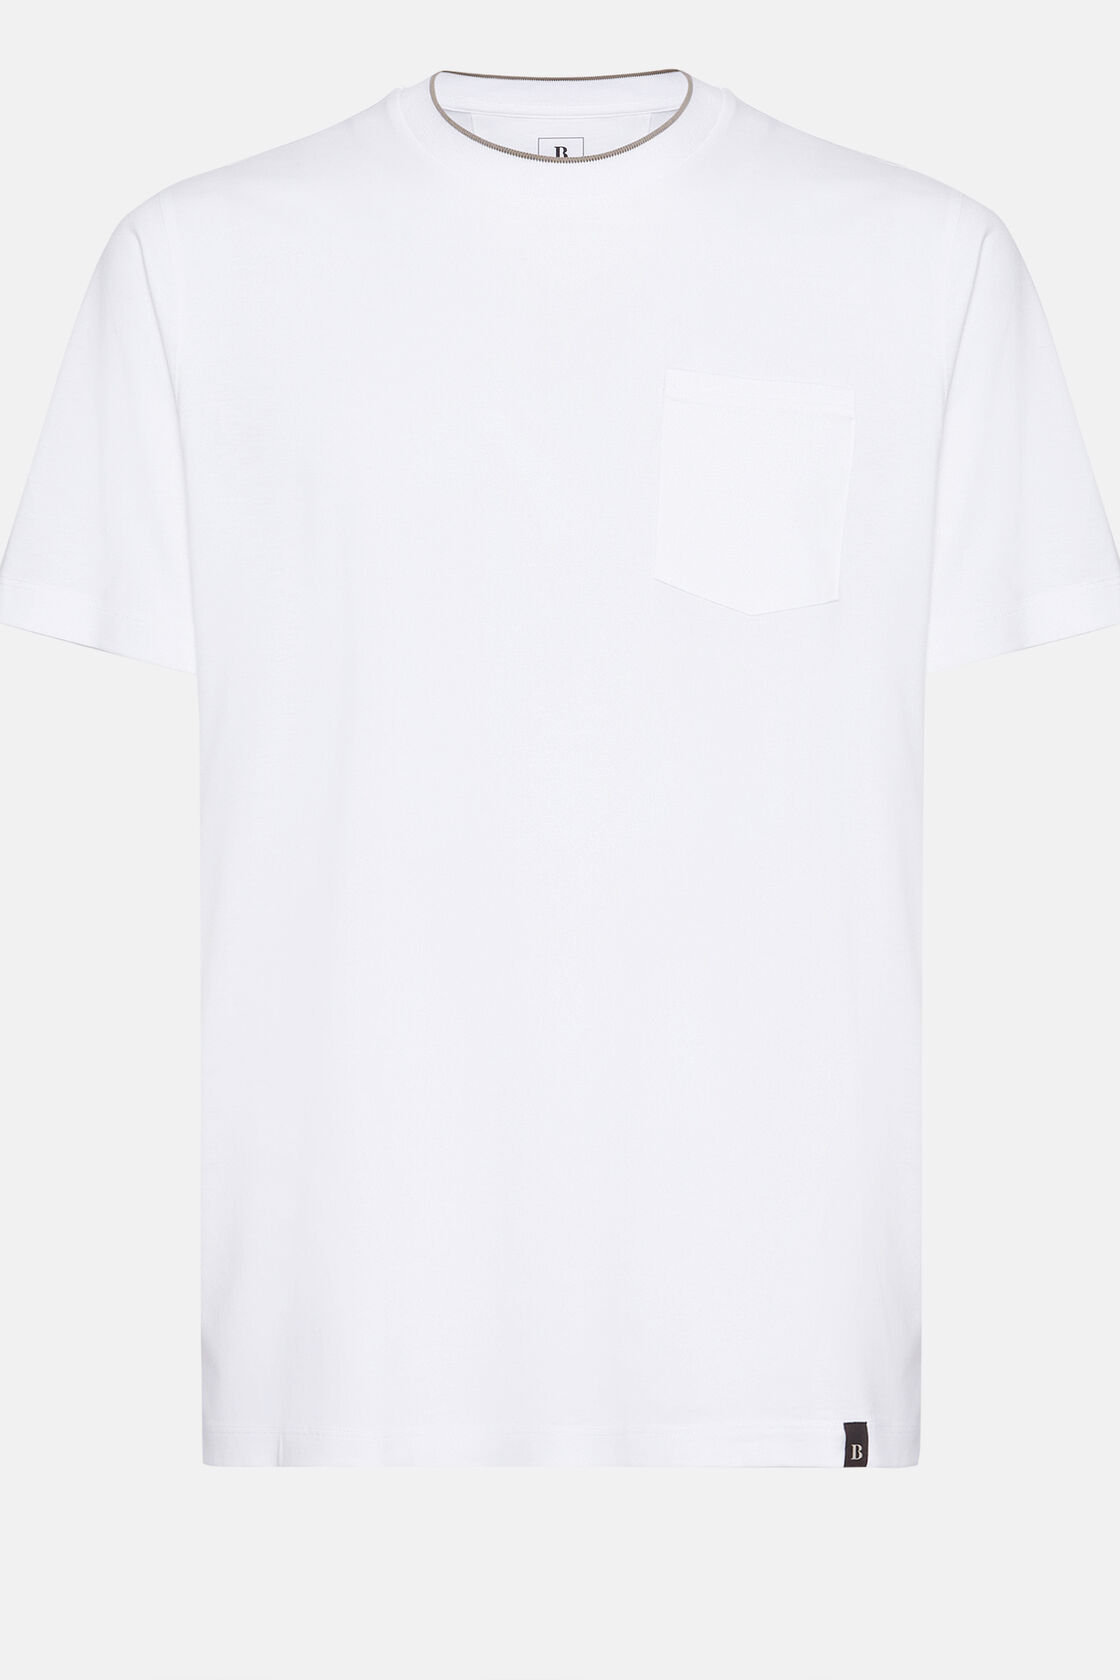 Camiseta De Punto Jersey De Algodón Tencel, Blanco, hi-res